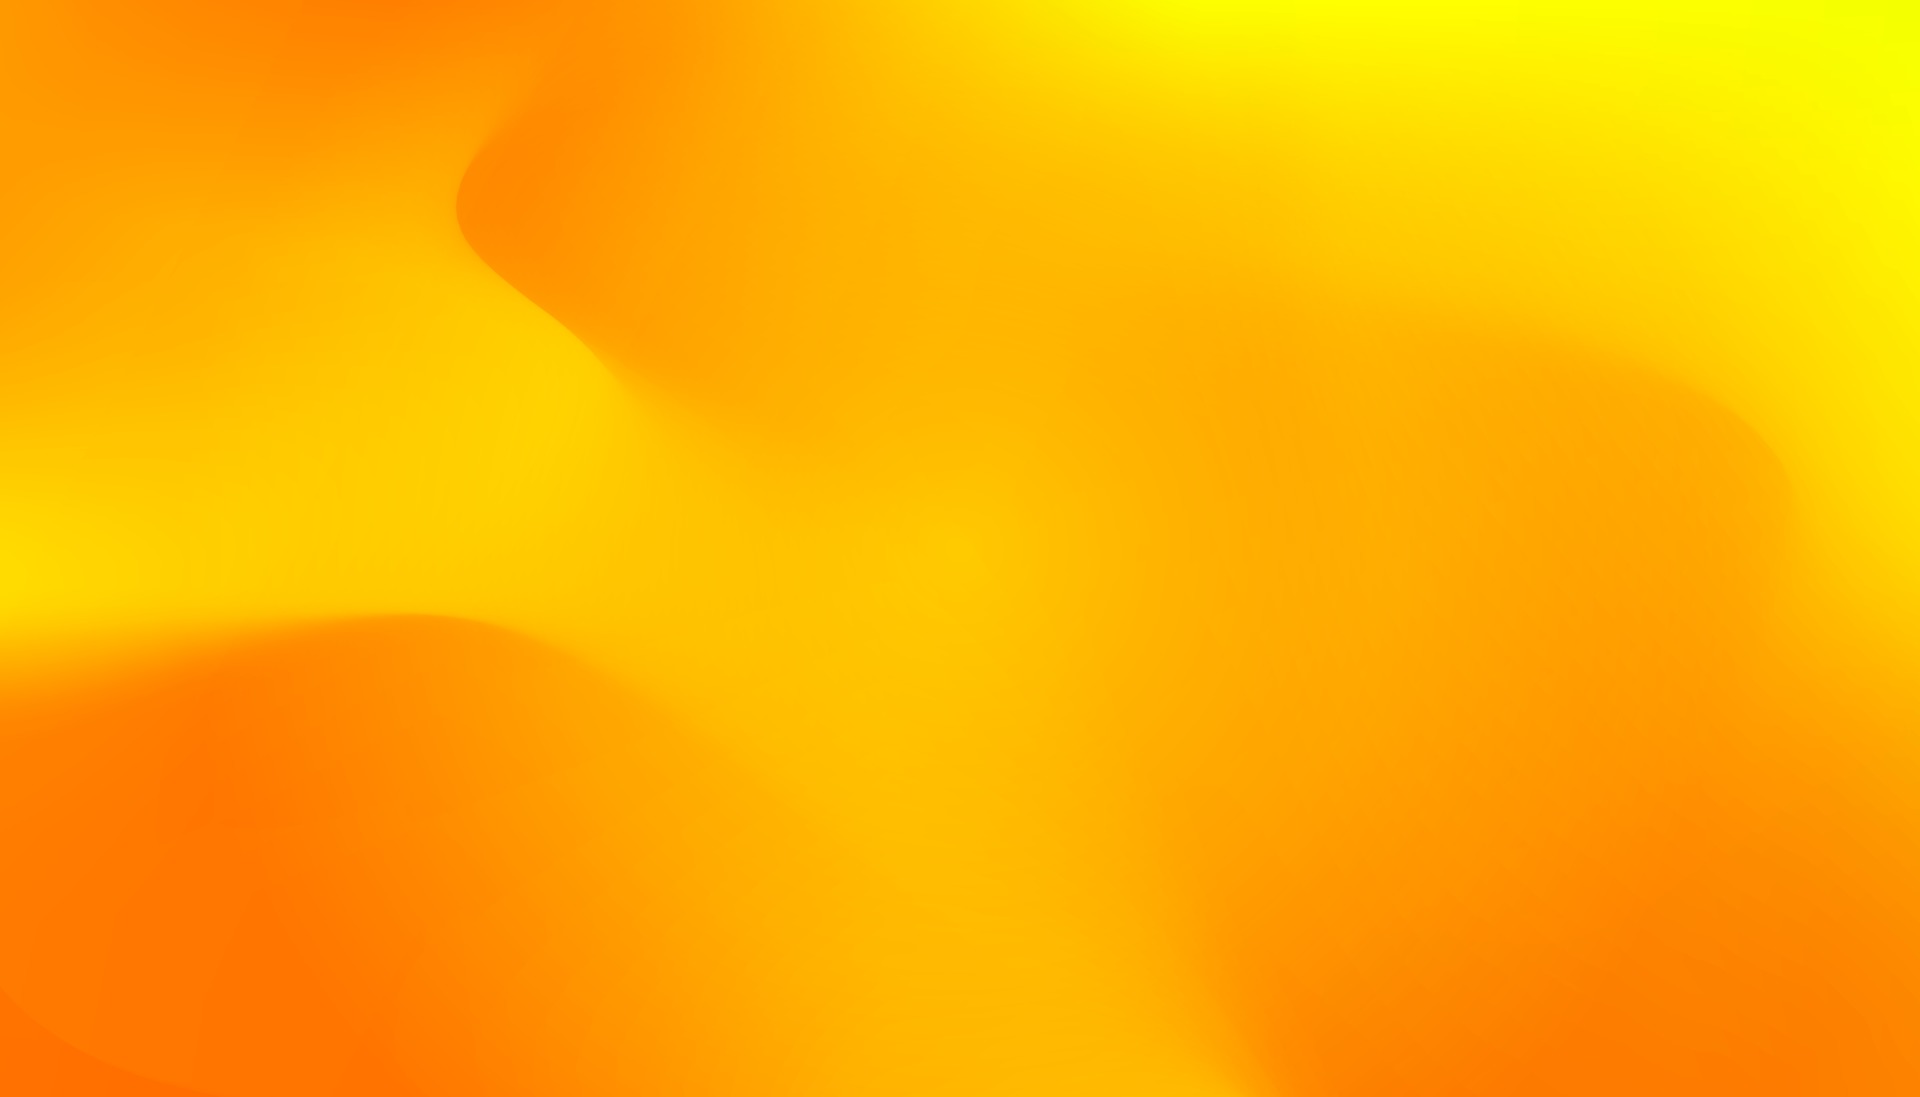 banner degradado ondulado naranja jugoso. Fondo abstracto líquido dinámico  de colores cálidos y frescos. Fondos de pantalla de malla dorada  ilustración vectorial original. plantilla de flujo de jugo de naranja de  verano